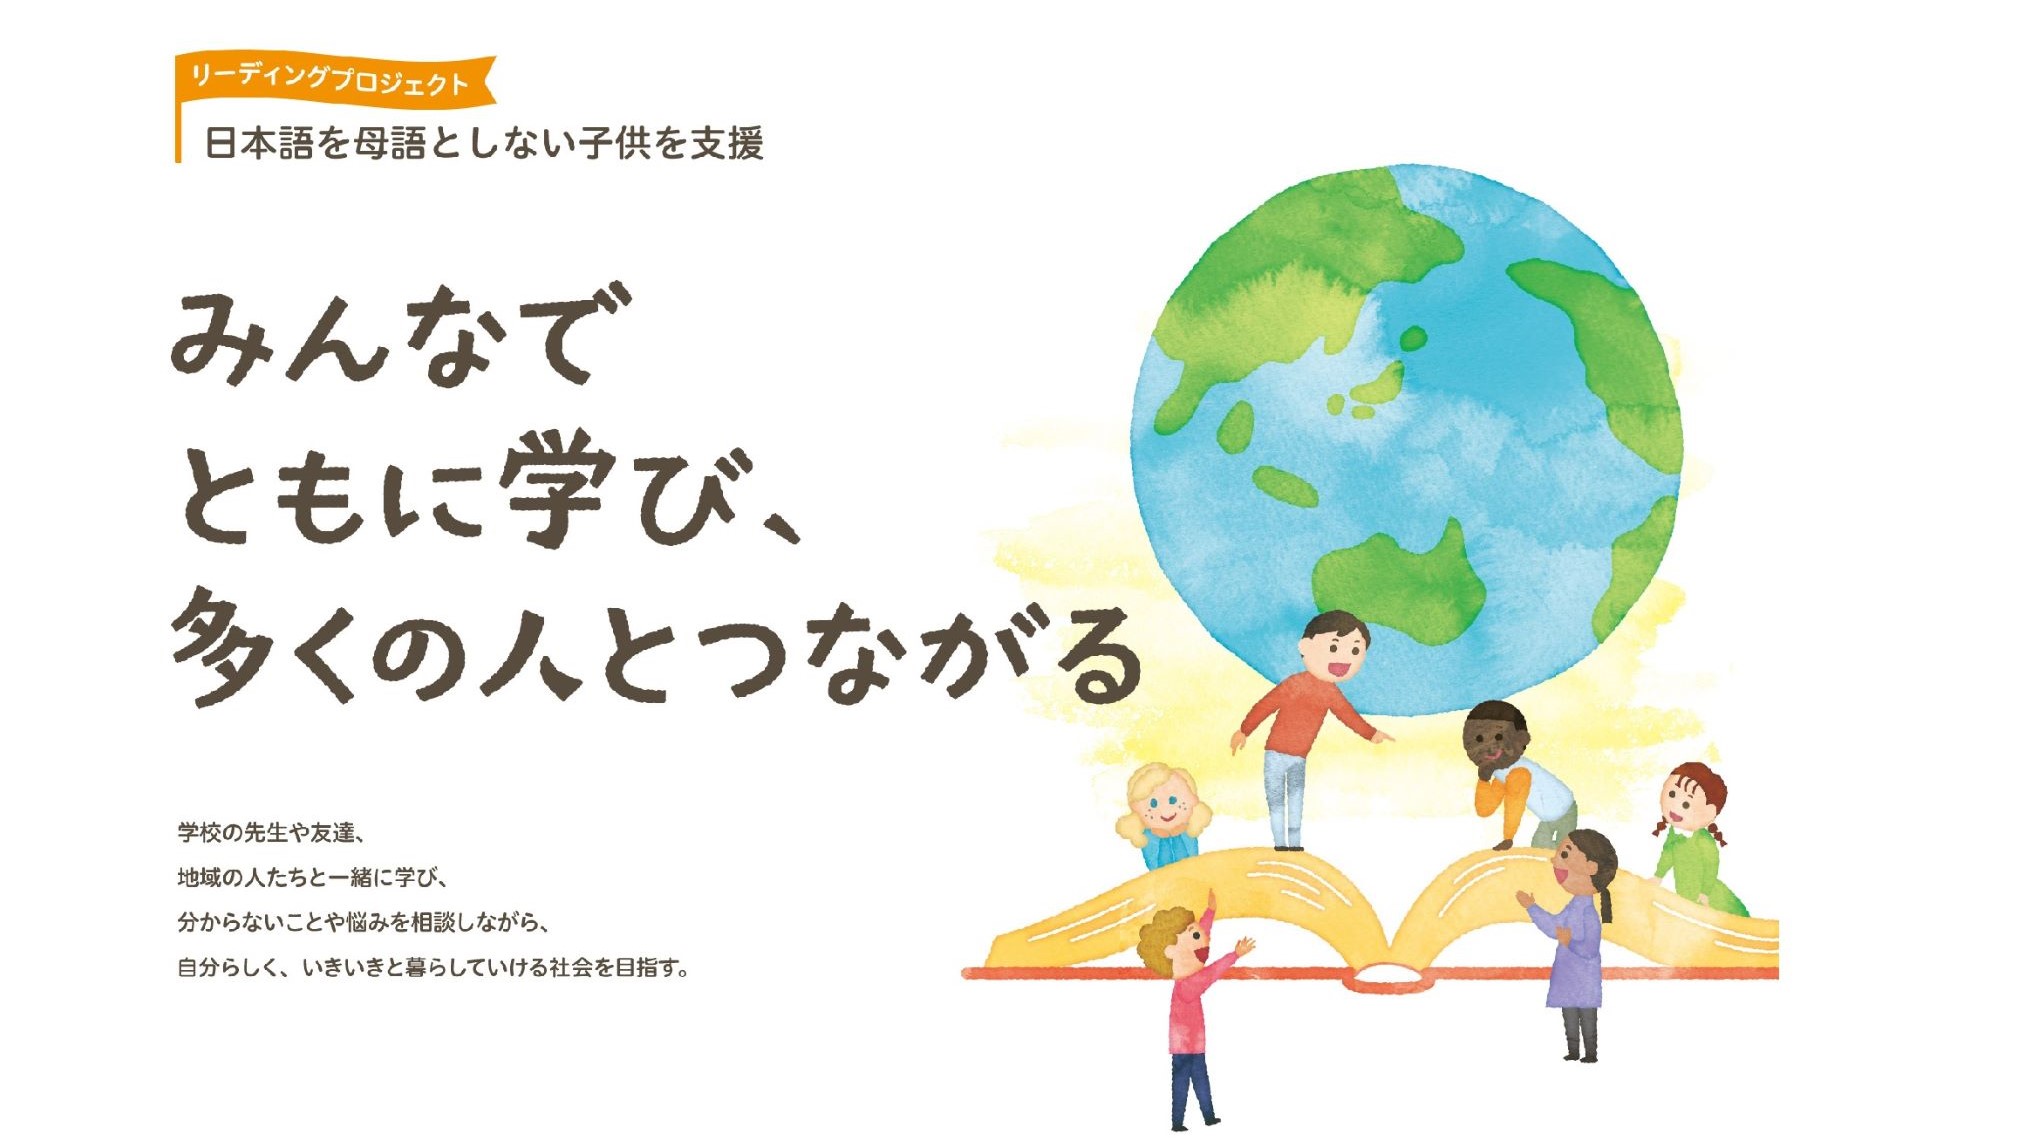 【サムネイル】日本語を母語としない子供を支援